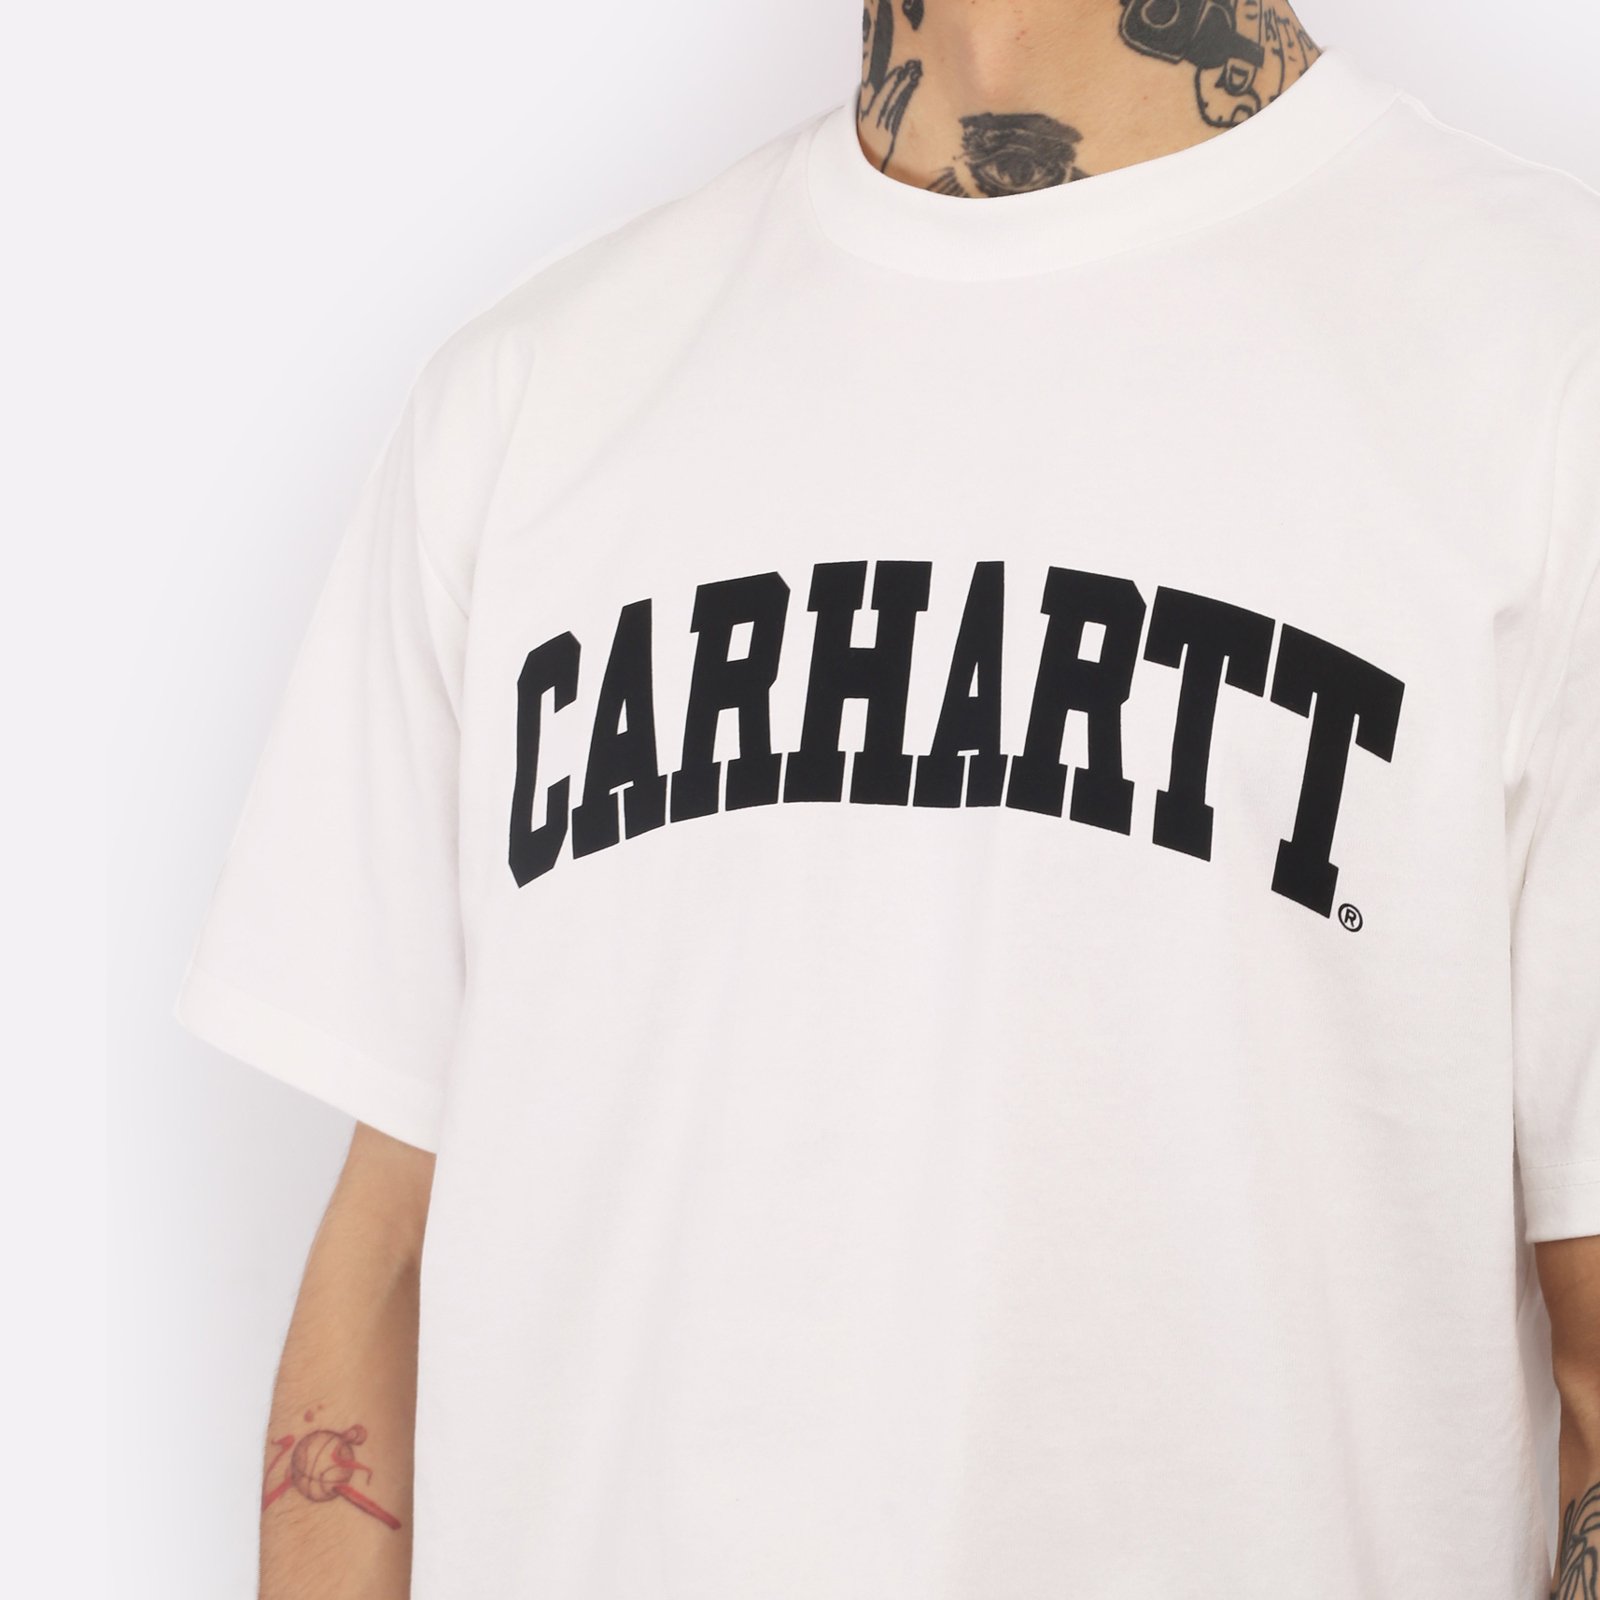 мужская белая футболка Carhartt WIP S/S University T-Shirt I028990-white/black - цена, описание, фото 4